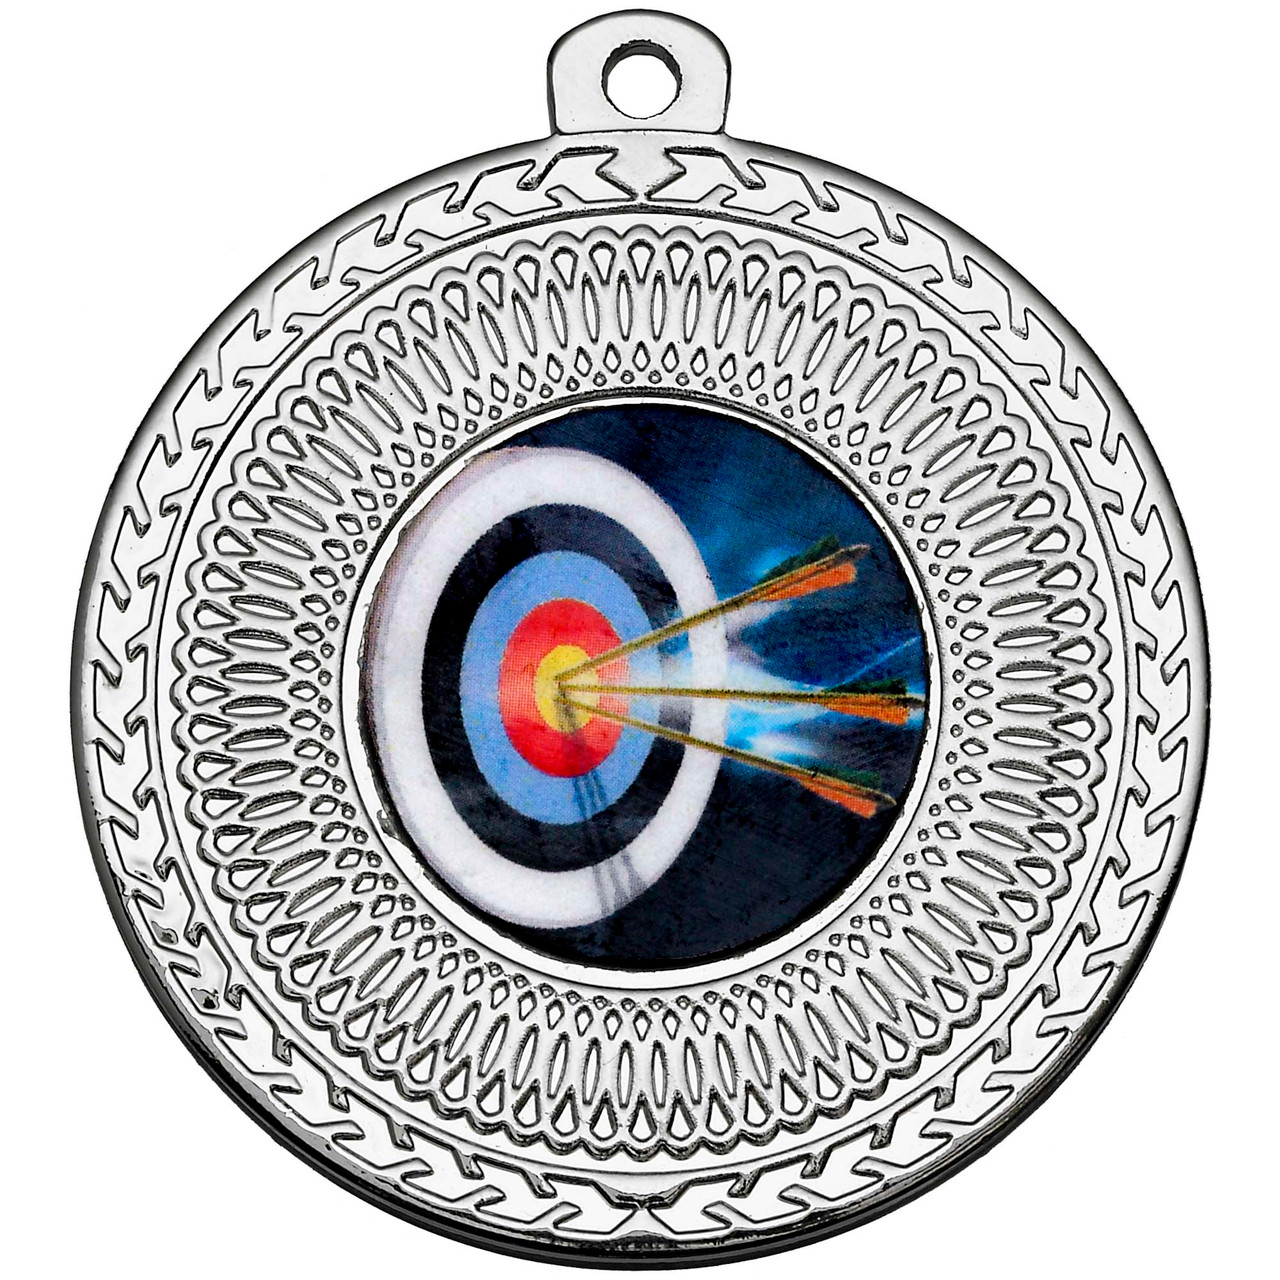 50mm Silver Multisport Circular Medal Award